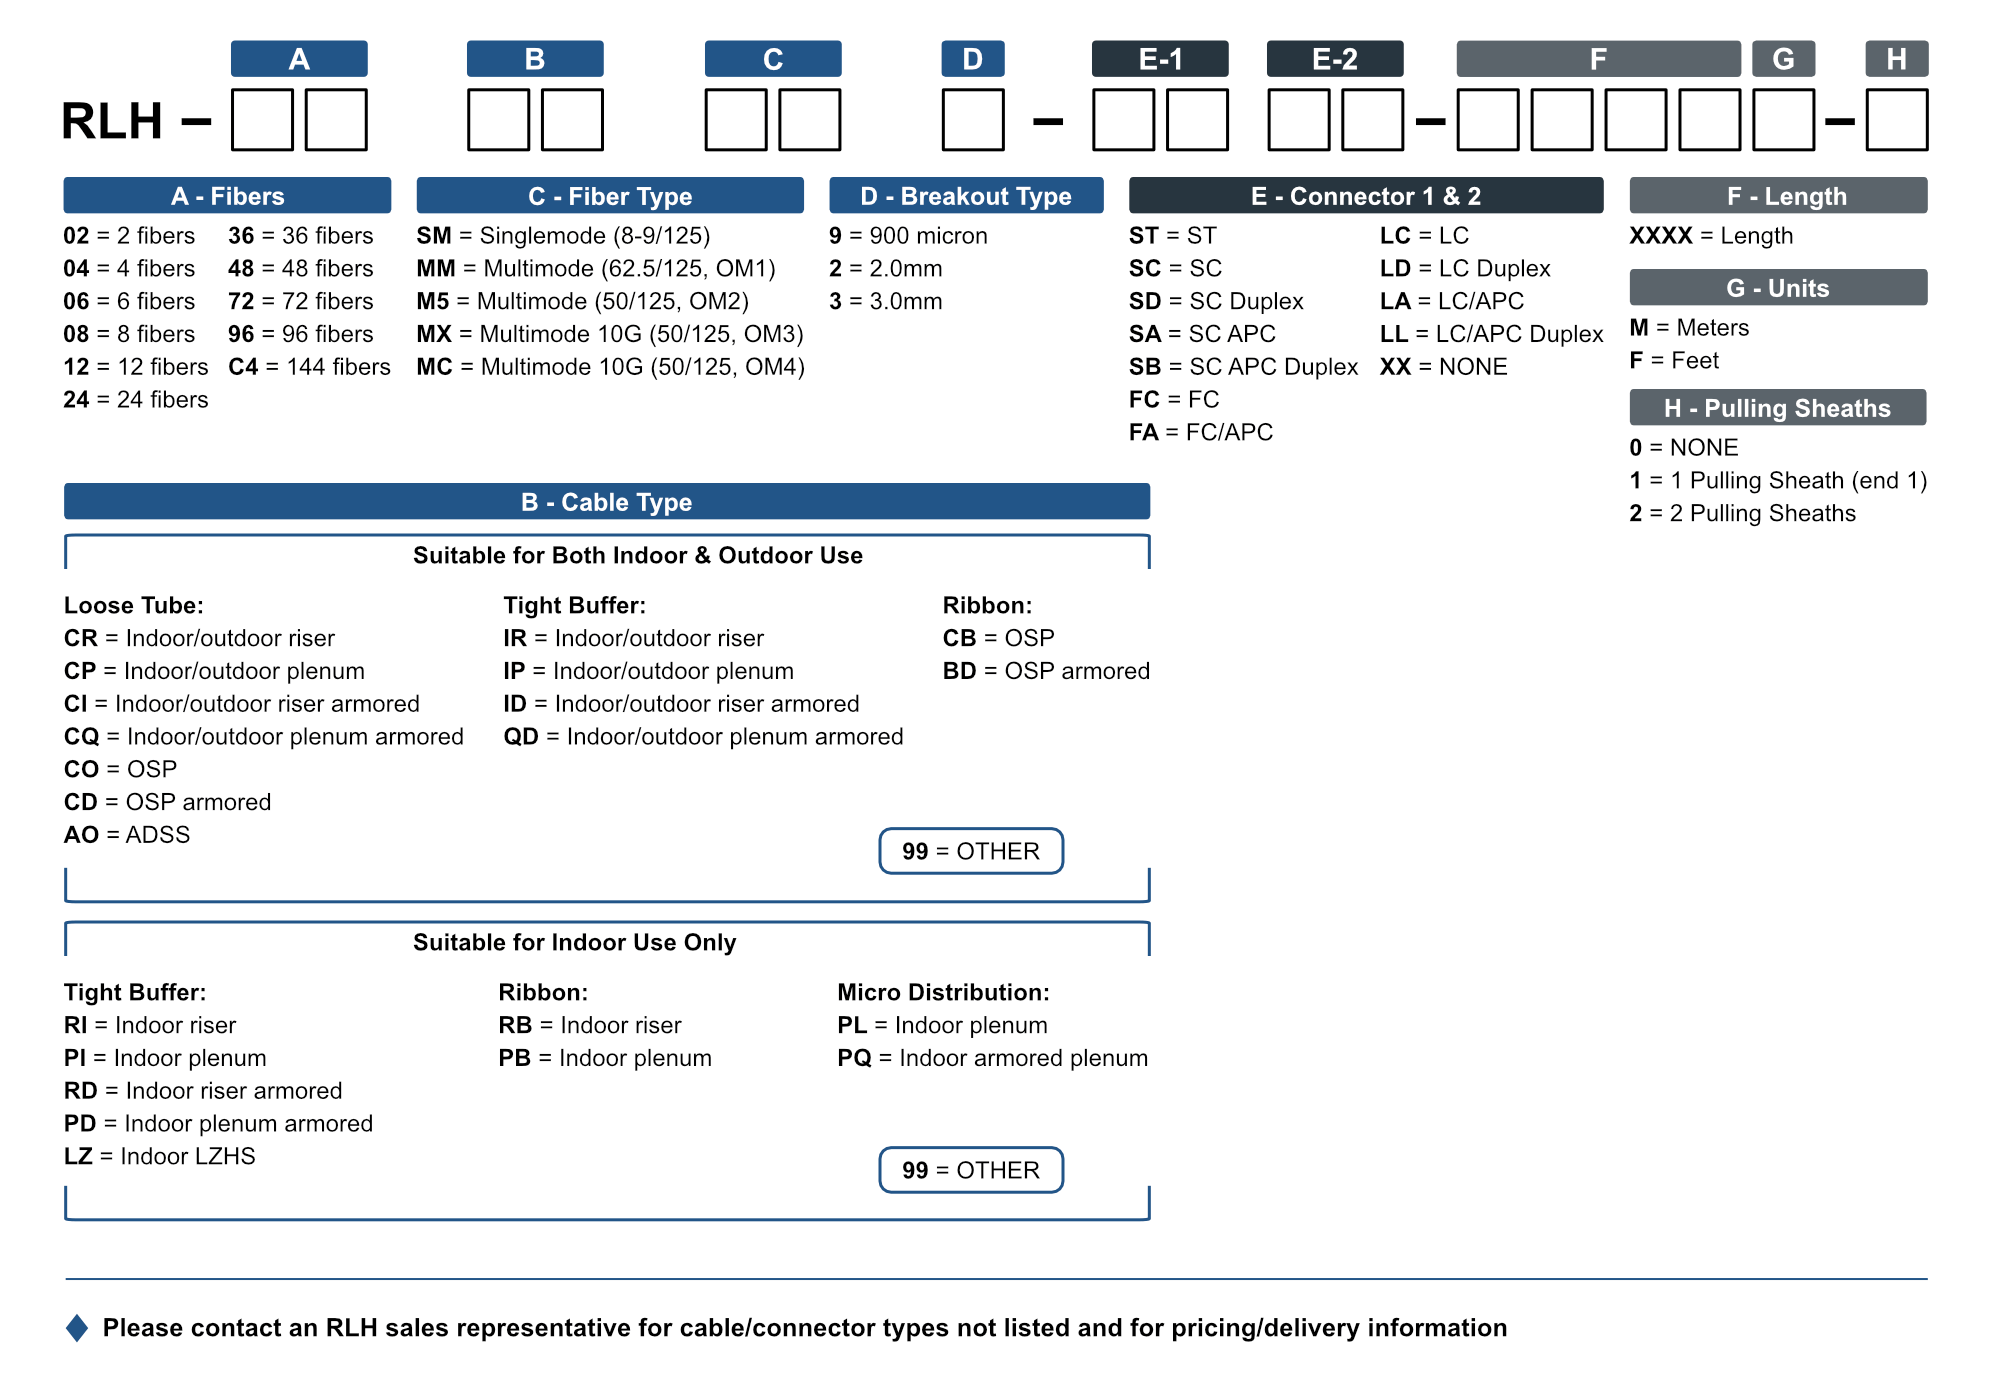 Fiber Connectors Chart